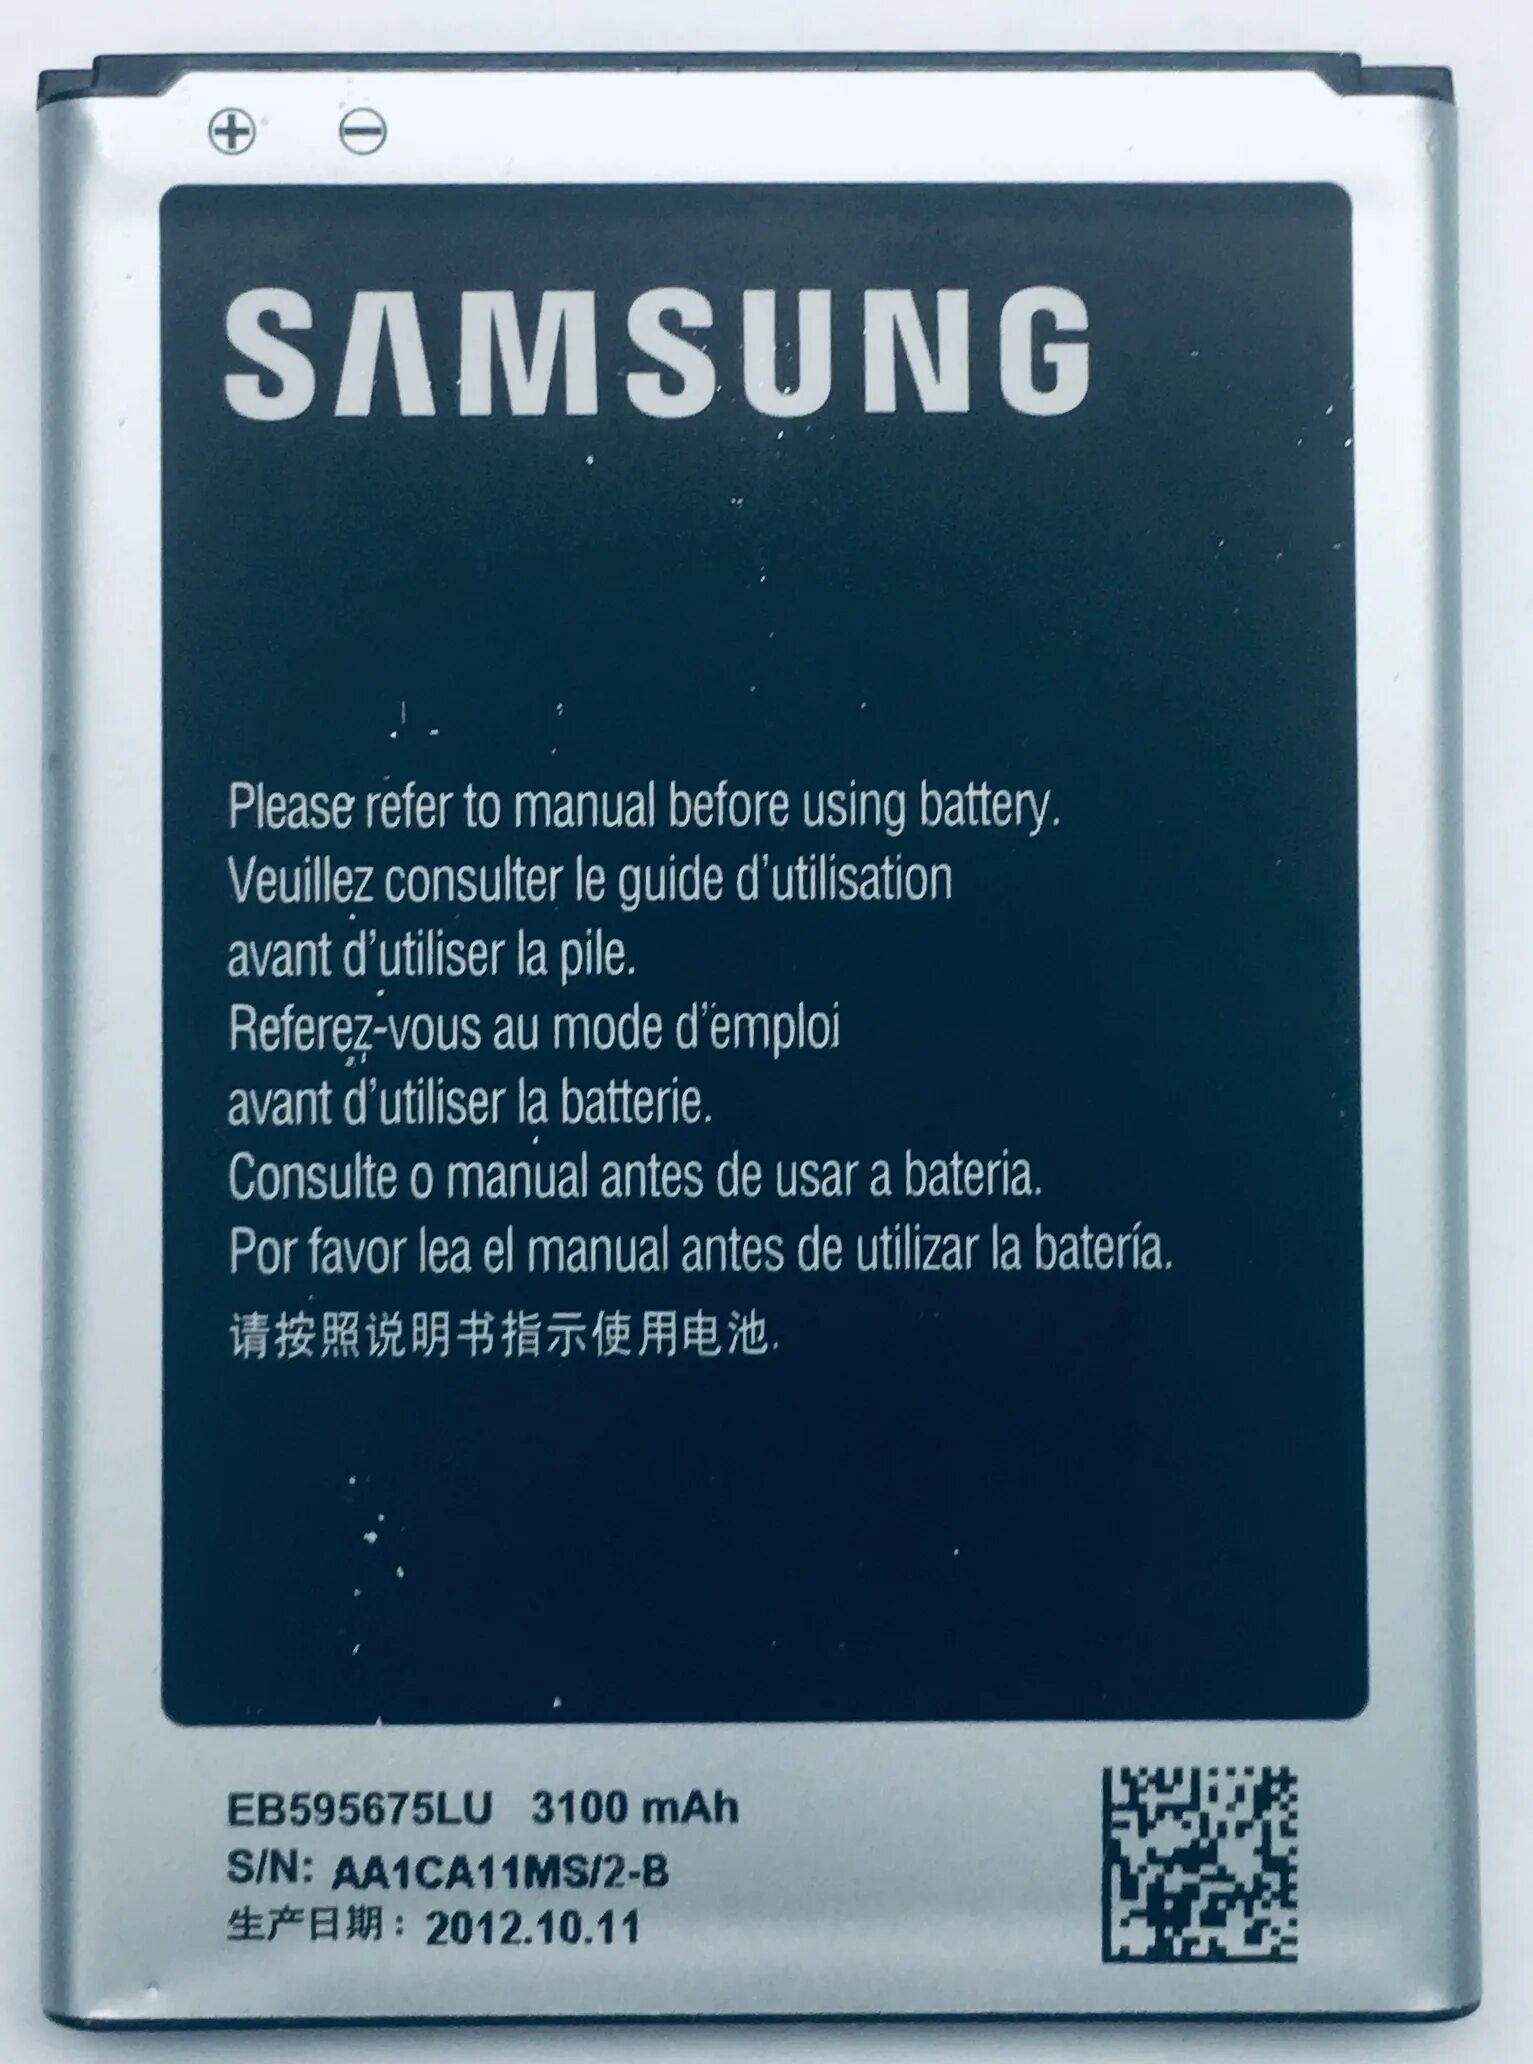 Купить аккумулятор samsung note. Samsung Galaxy Note 2. Samsung Galaxy Note II gt-n7100. Samsung Galaxy Note gt аккумулятор. Samsung Galaxy Note II gt-n7100 батарея.